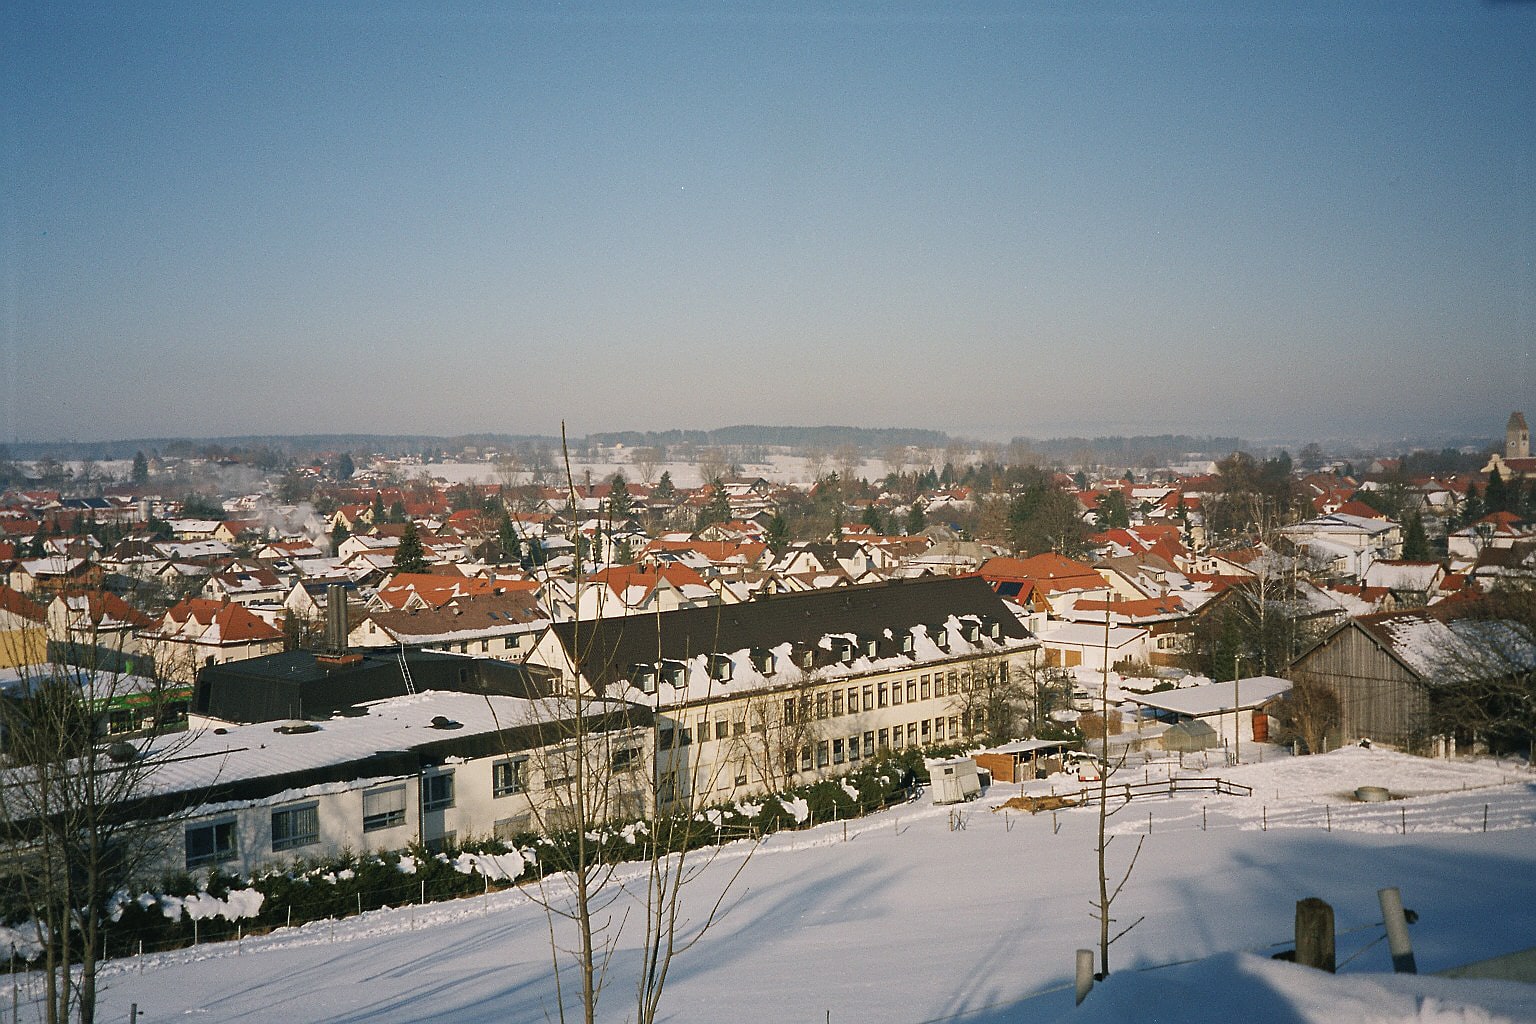 Peißenberg, Germany